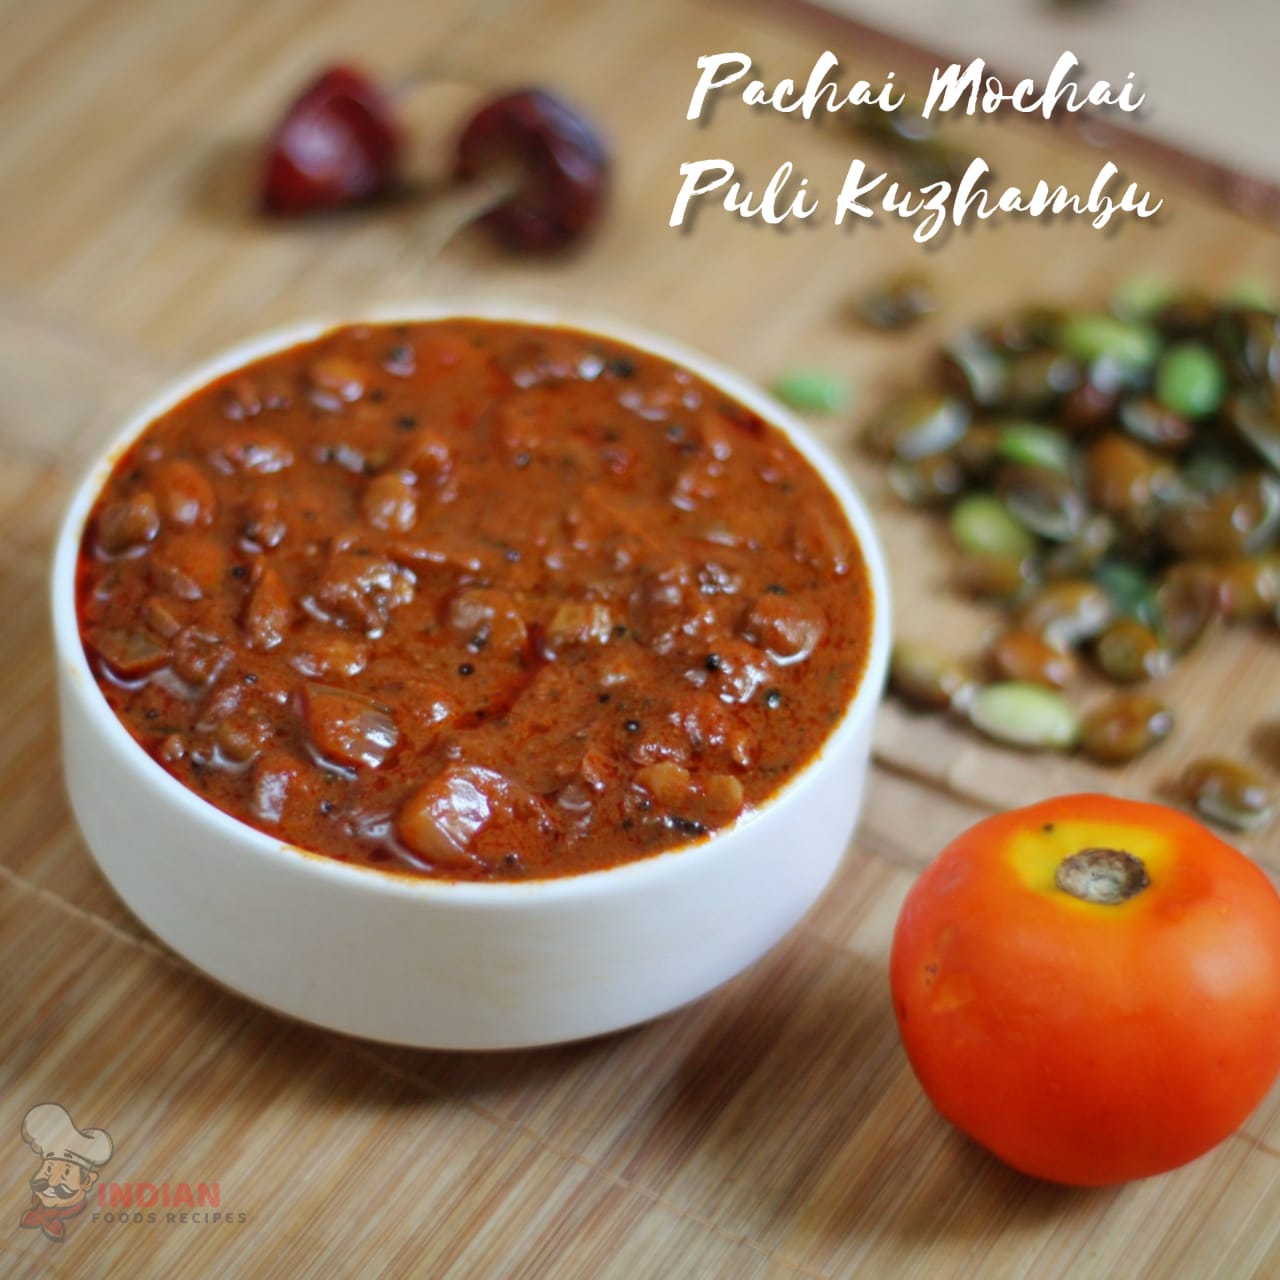 Pacha Mochai Puli Kuzhambu Recipe